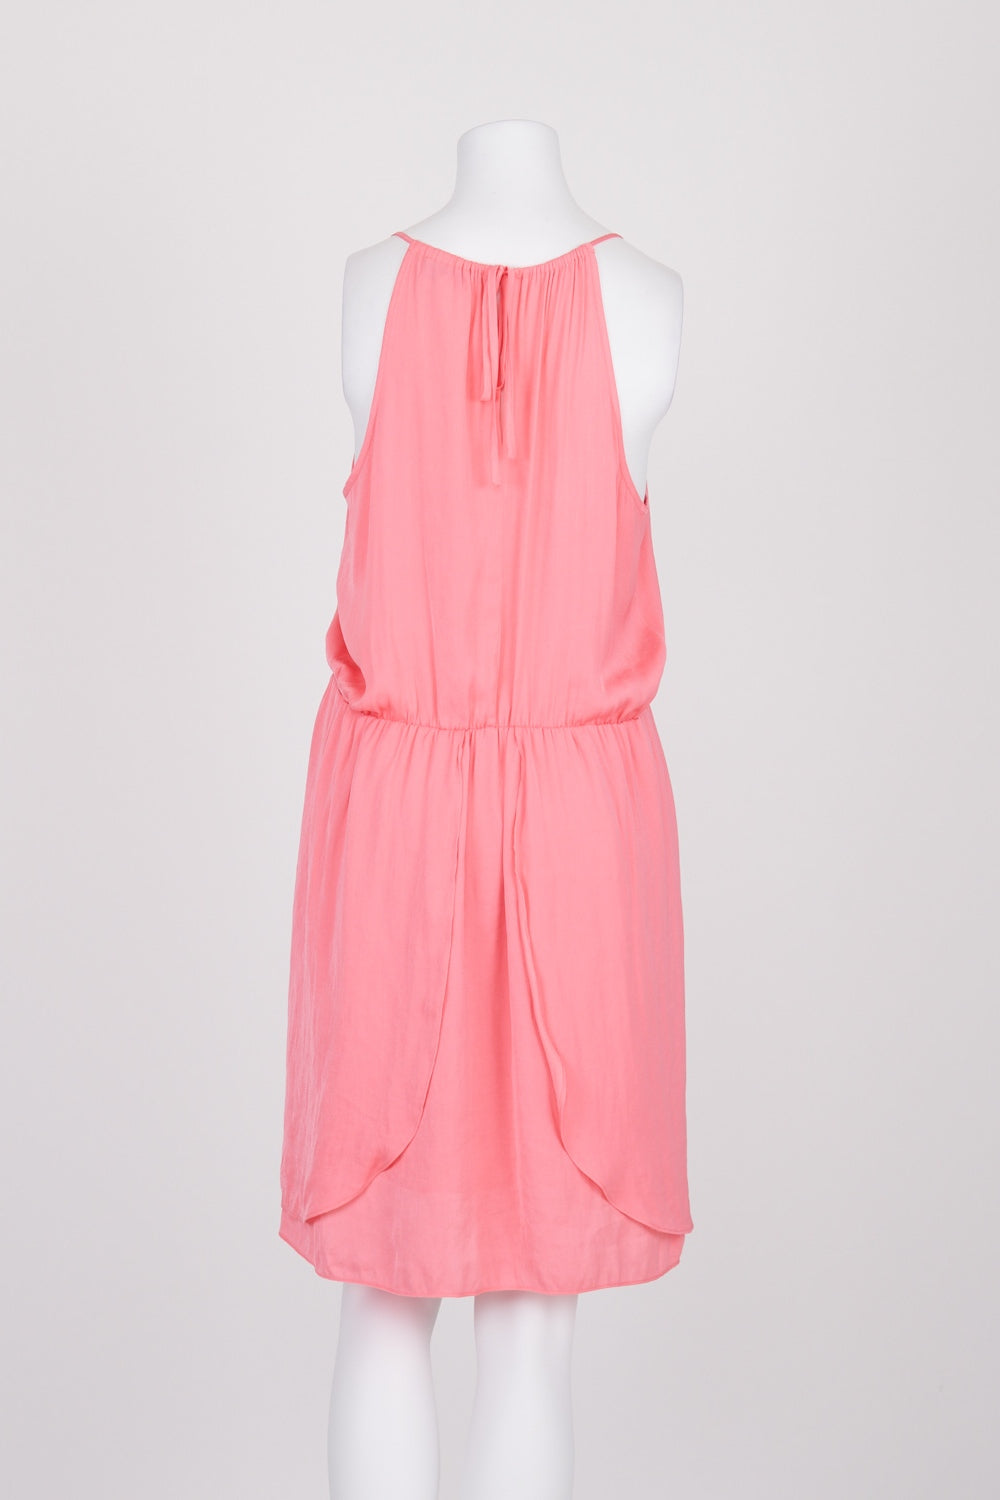 Witchery Pink Sleeveless Dress 12